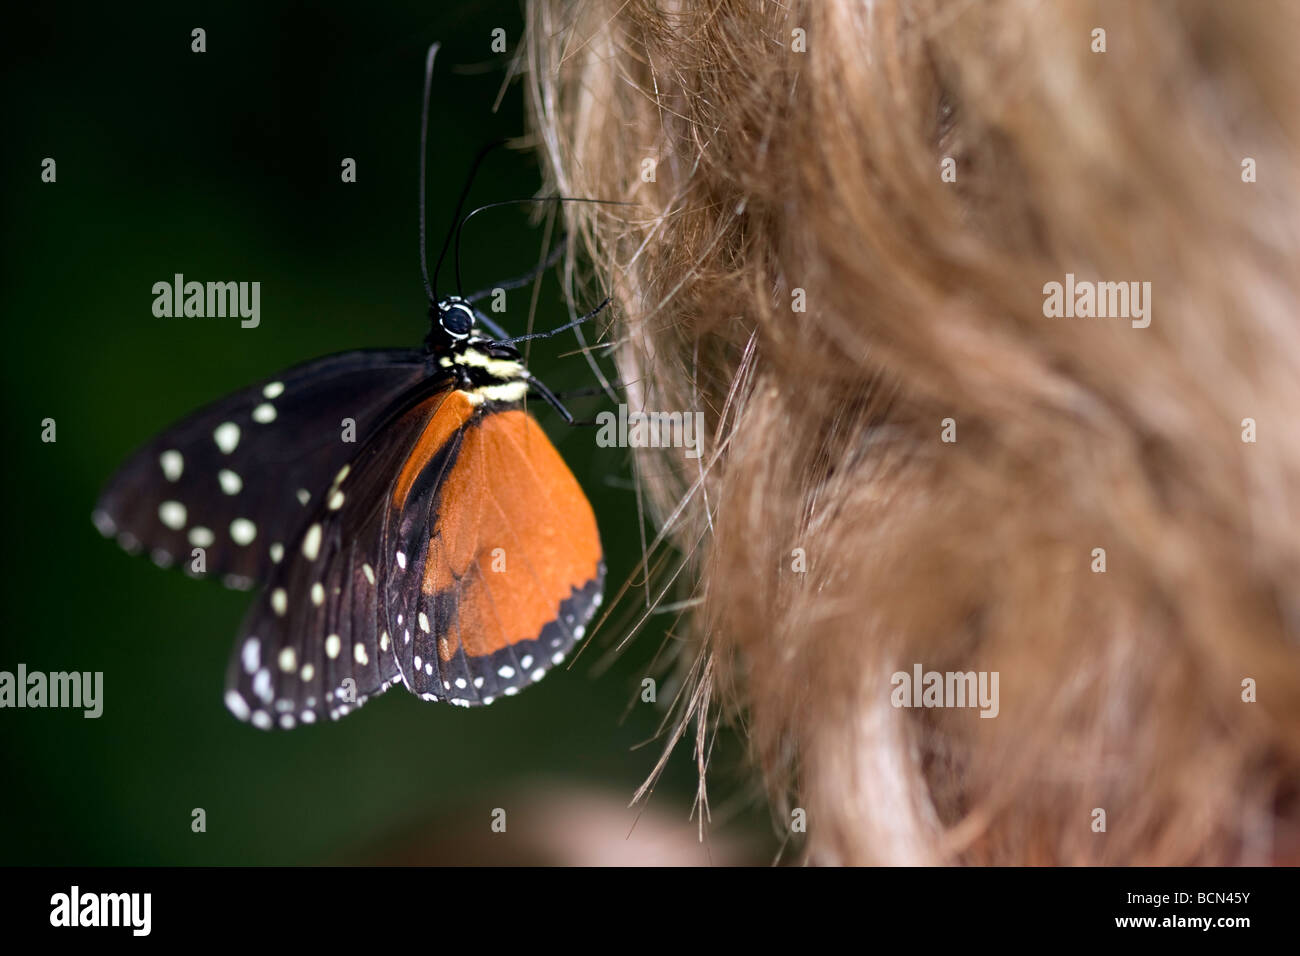 Tiger Schmetterling freundet sich mit einer reizenden Dame und fragt sie nach einer Fahrt rund um den Wald. Stockfoto